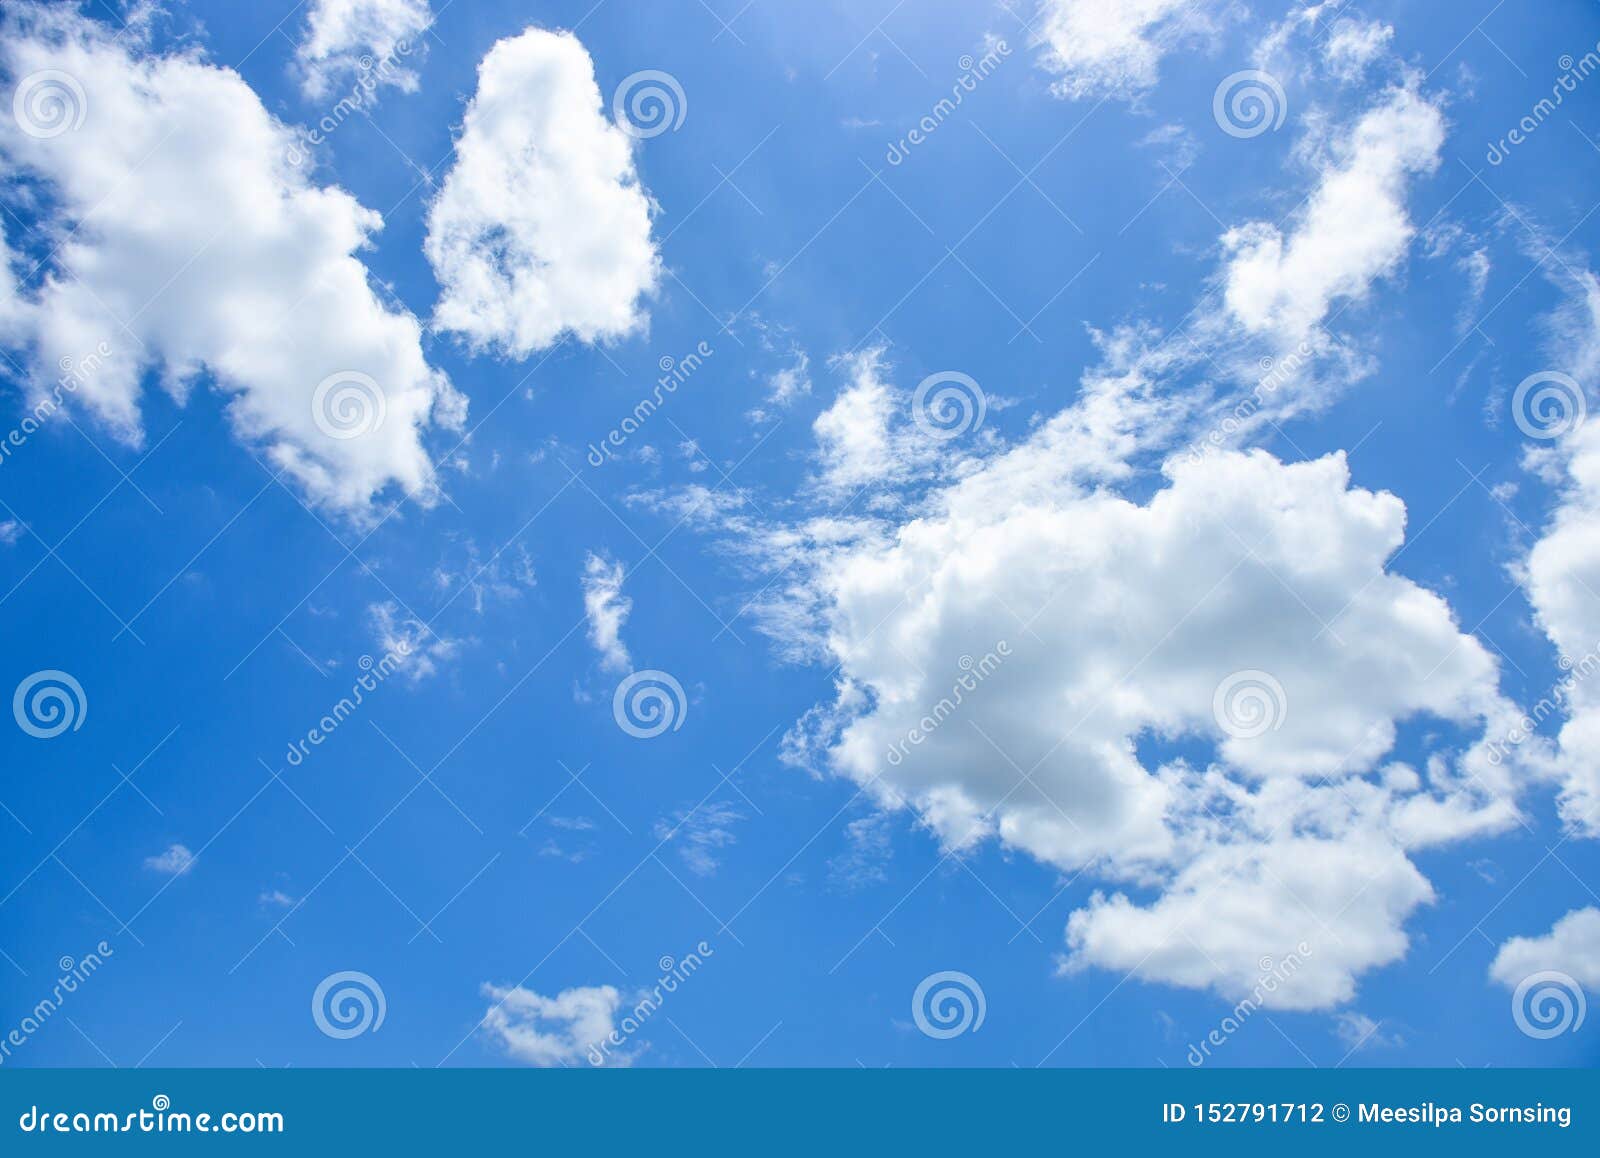 蓝天白云白背景下午美丽的天空和云图库摄影片 图片包括有